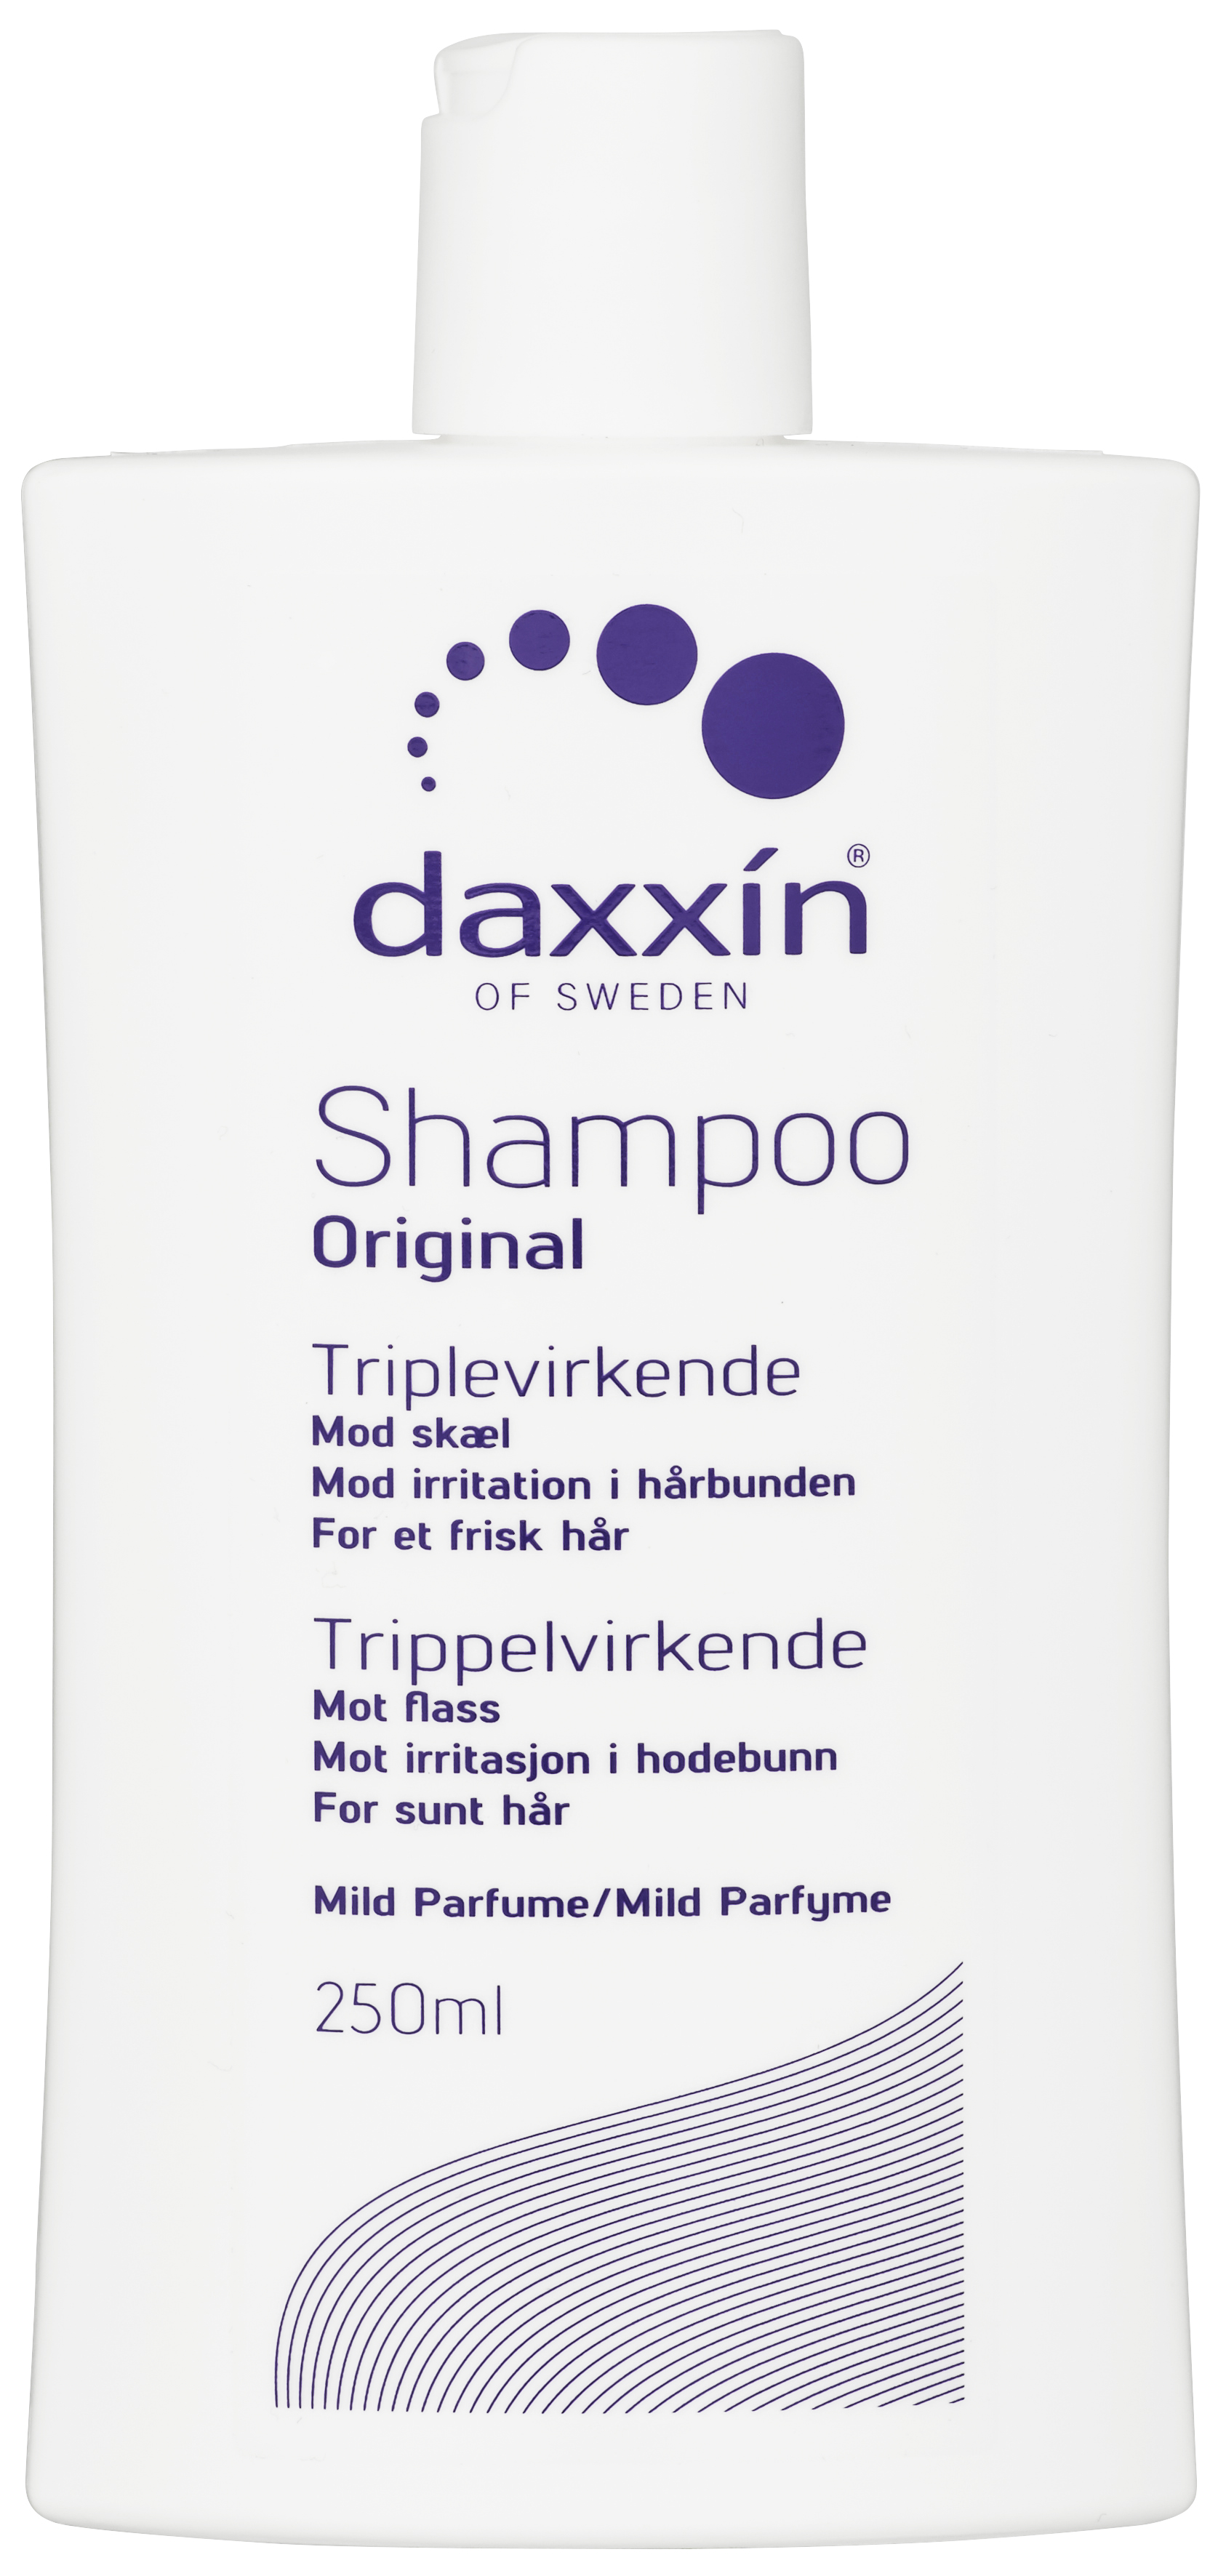 Daxxin Shampoo Trippelvirkende mot Flass, m/p, 250 ml